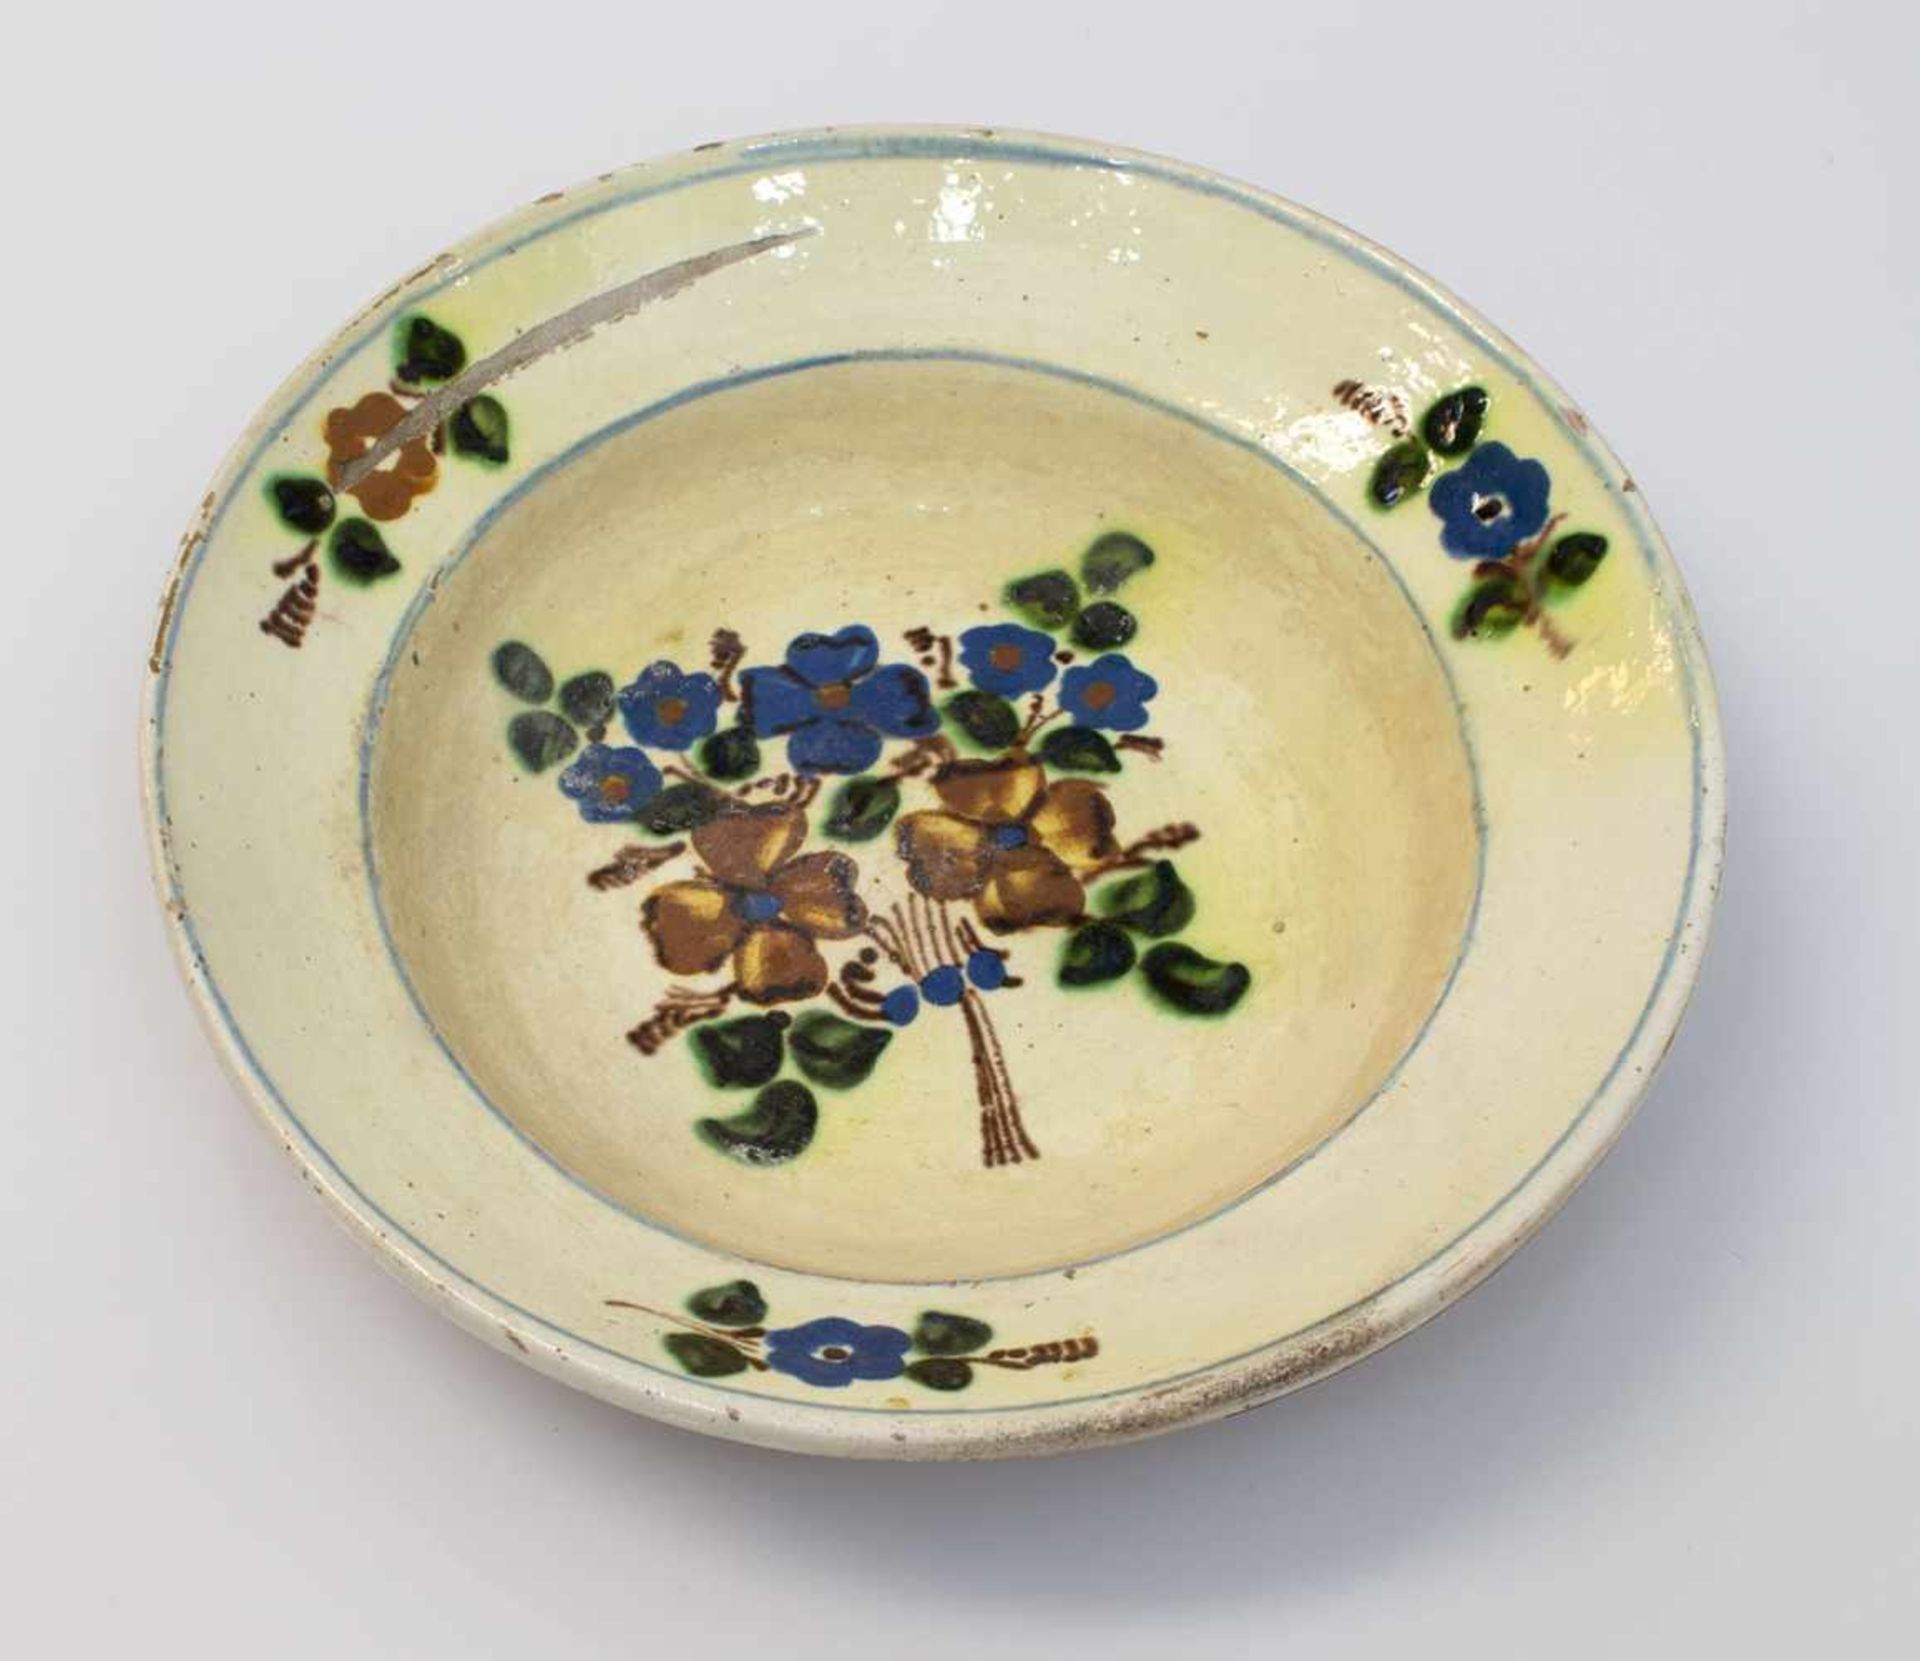 Schüsselteller deutsch um 1850, beige glasierte Keramik mit typischer Bauernmalerei im Spiegel u.